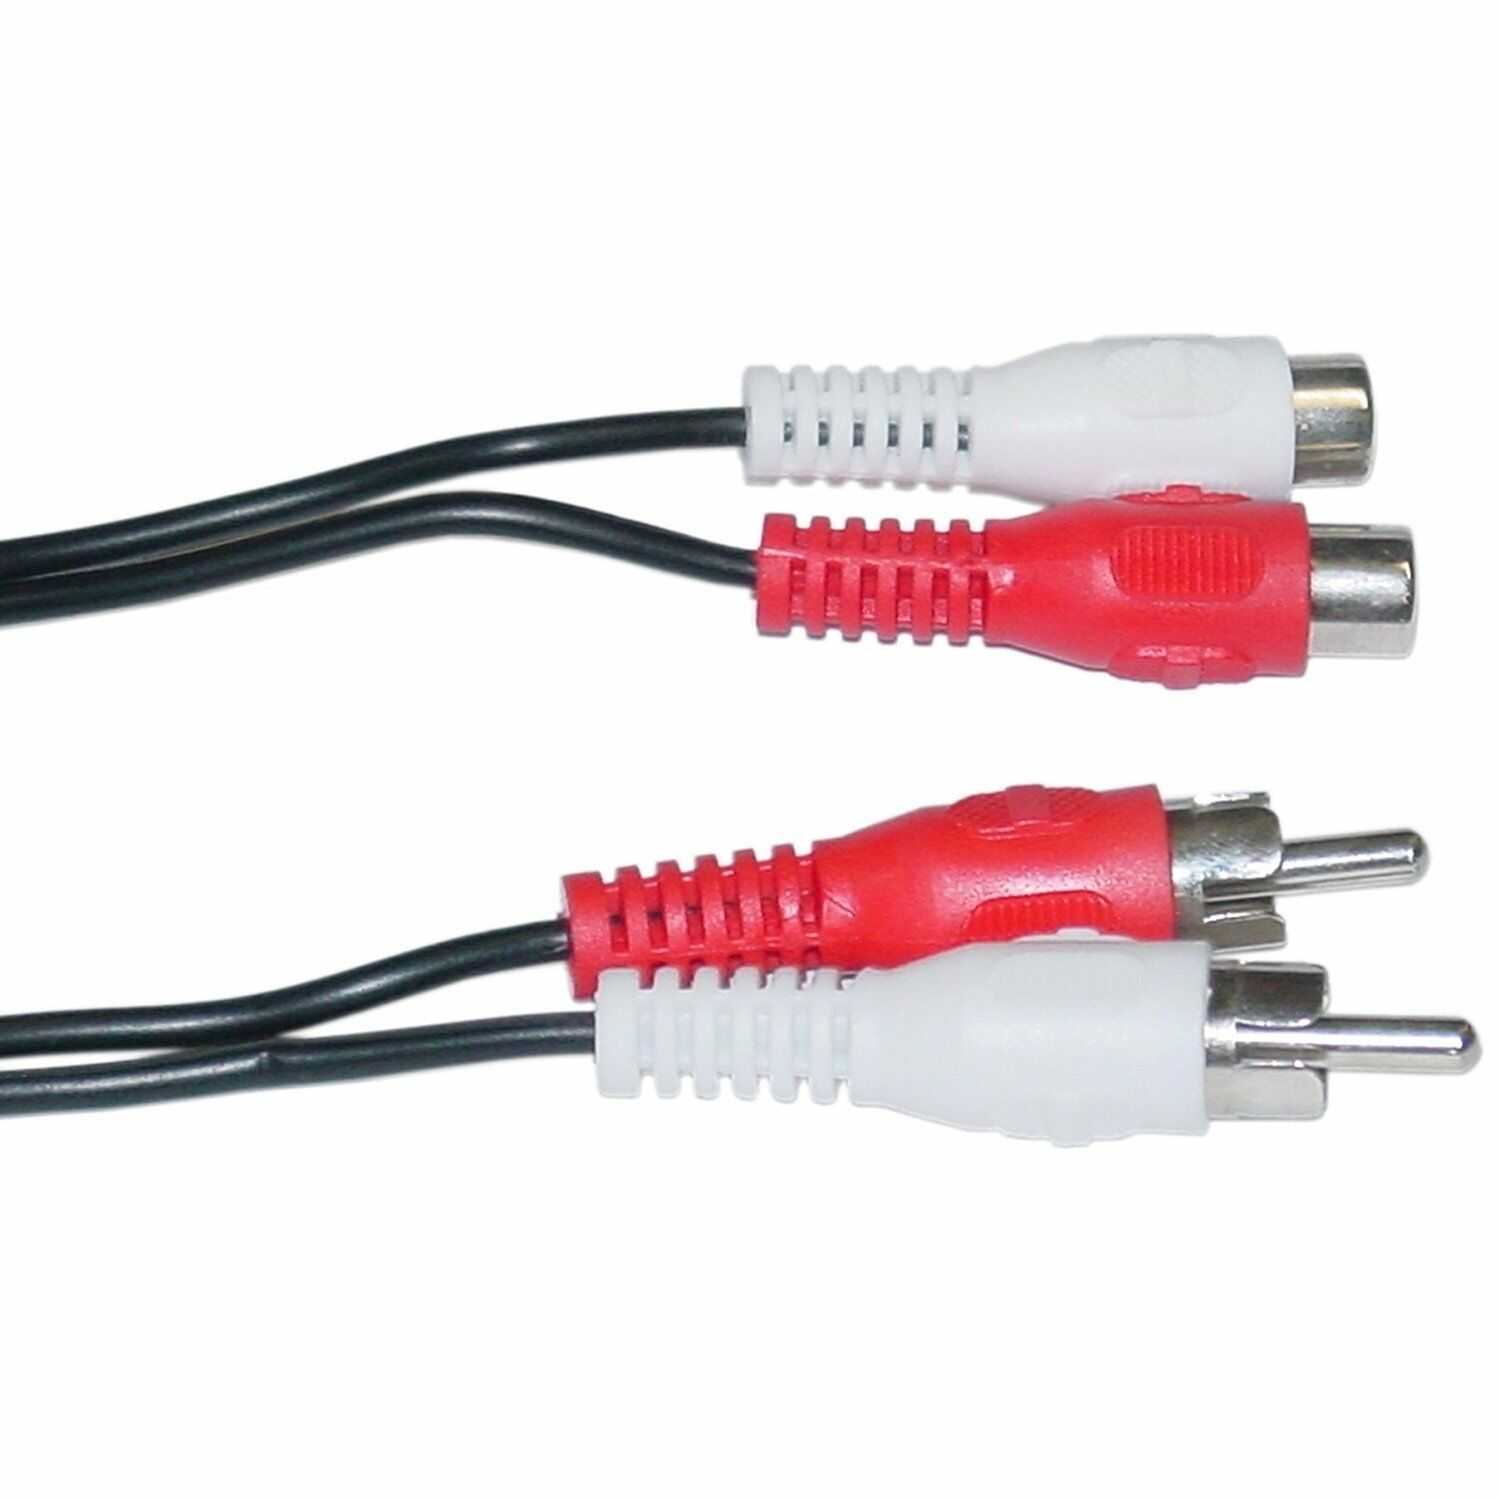 Оптический аудиокабель: цифровой акустический кабель с разъемом toslink. как подключить оптику через переходник на «тюльпан»? как выбрать кабель?